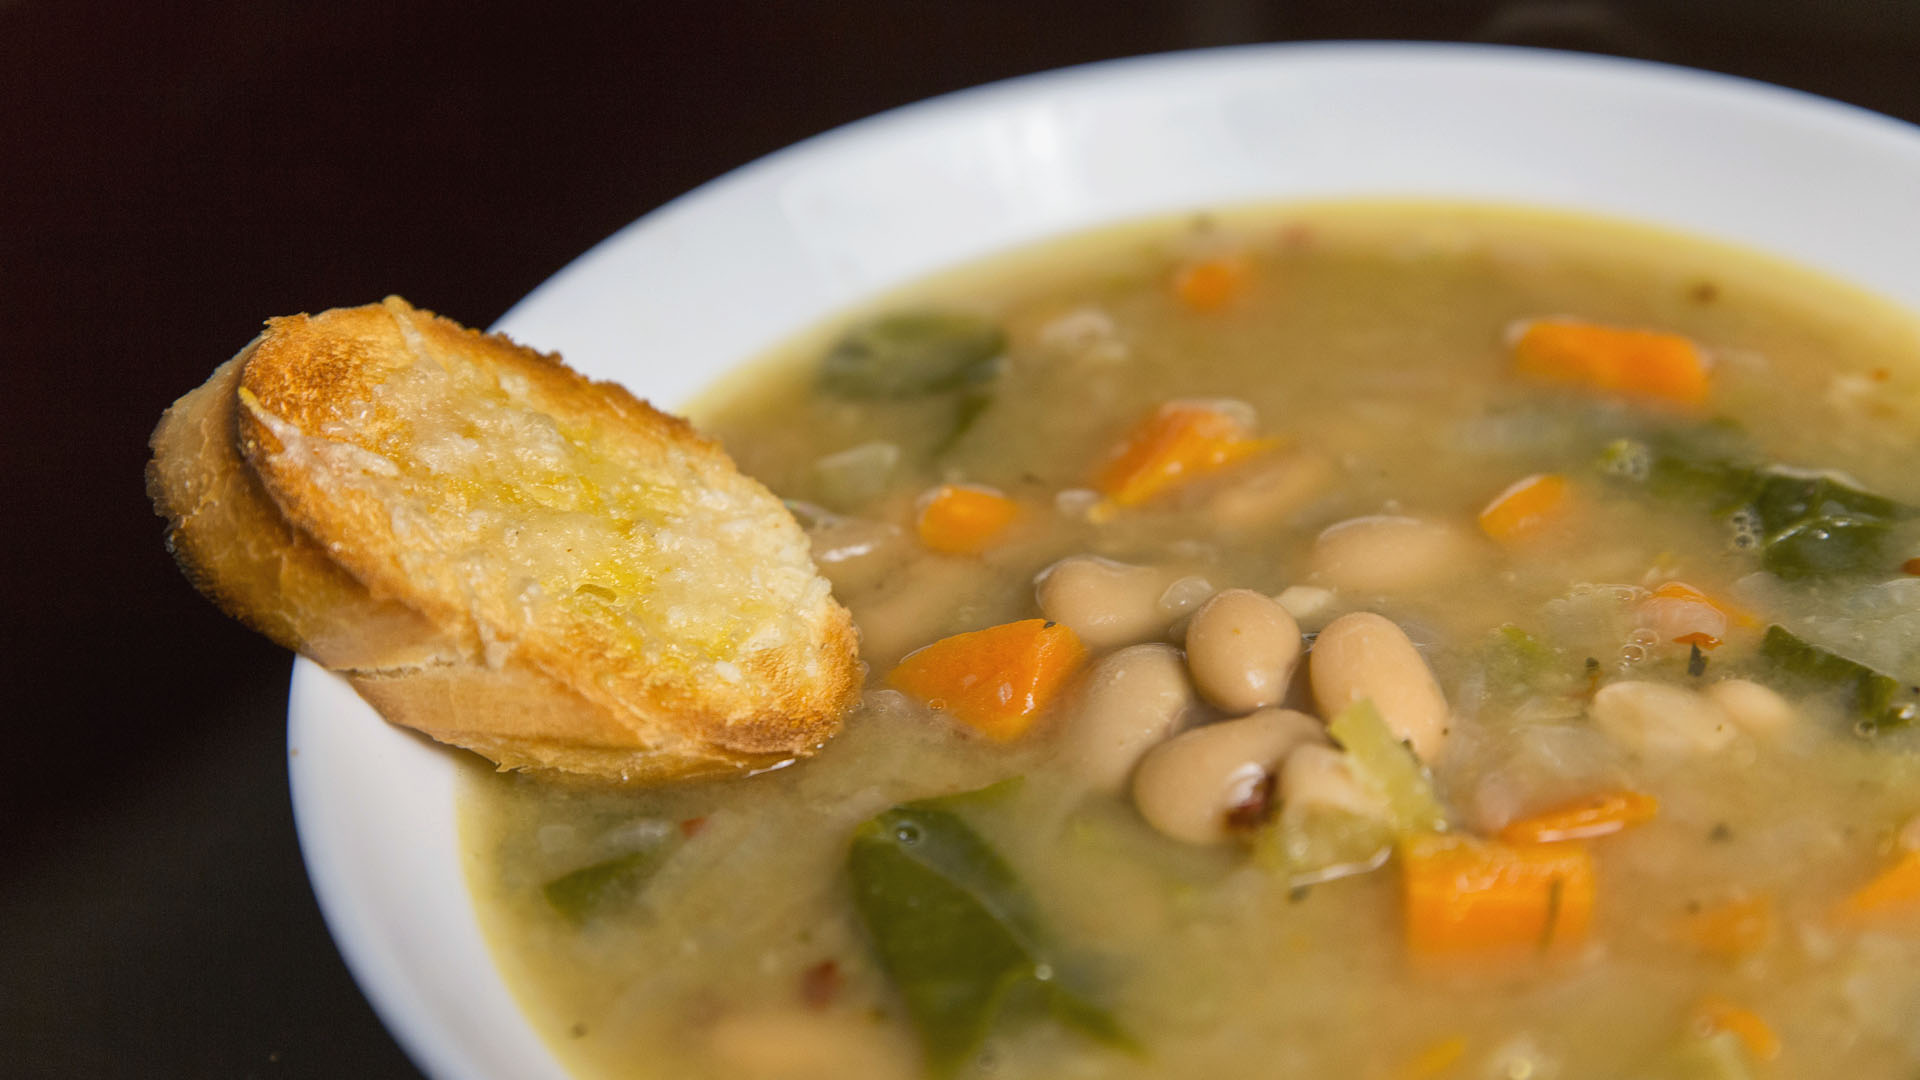 Суп с солеными огурцами - лучшие домашние рецепты